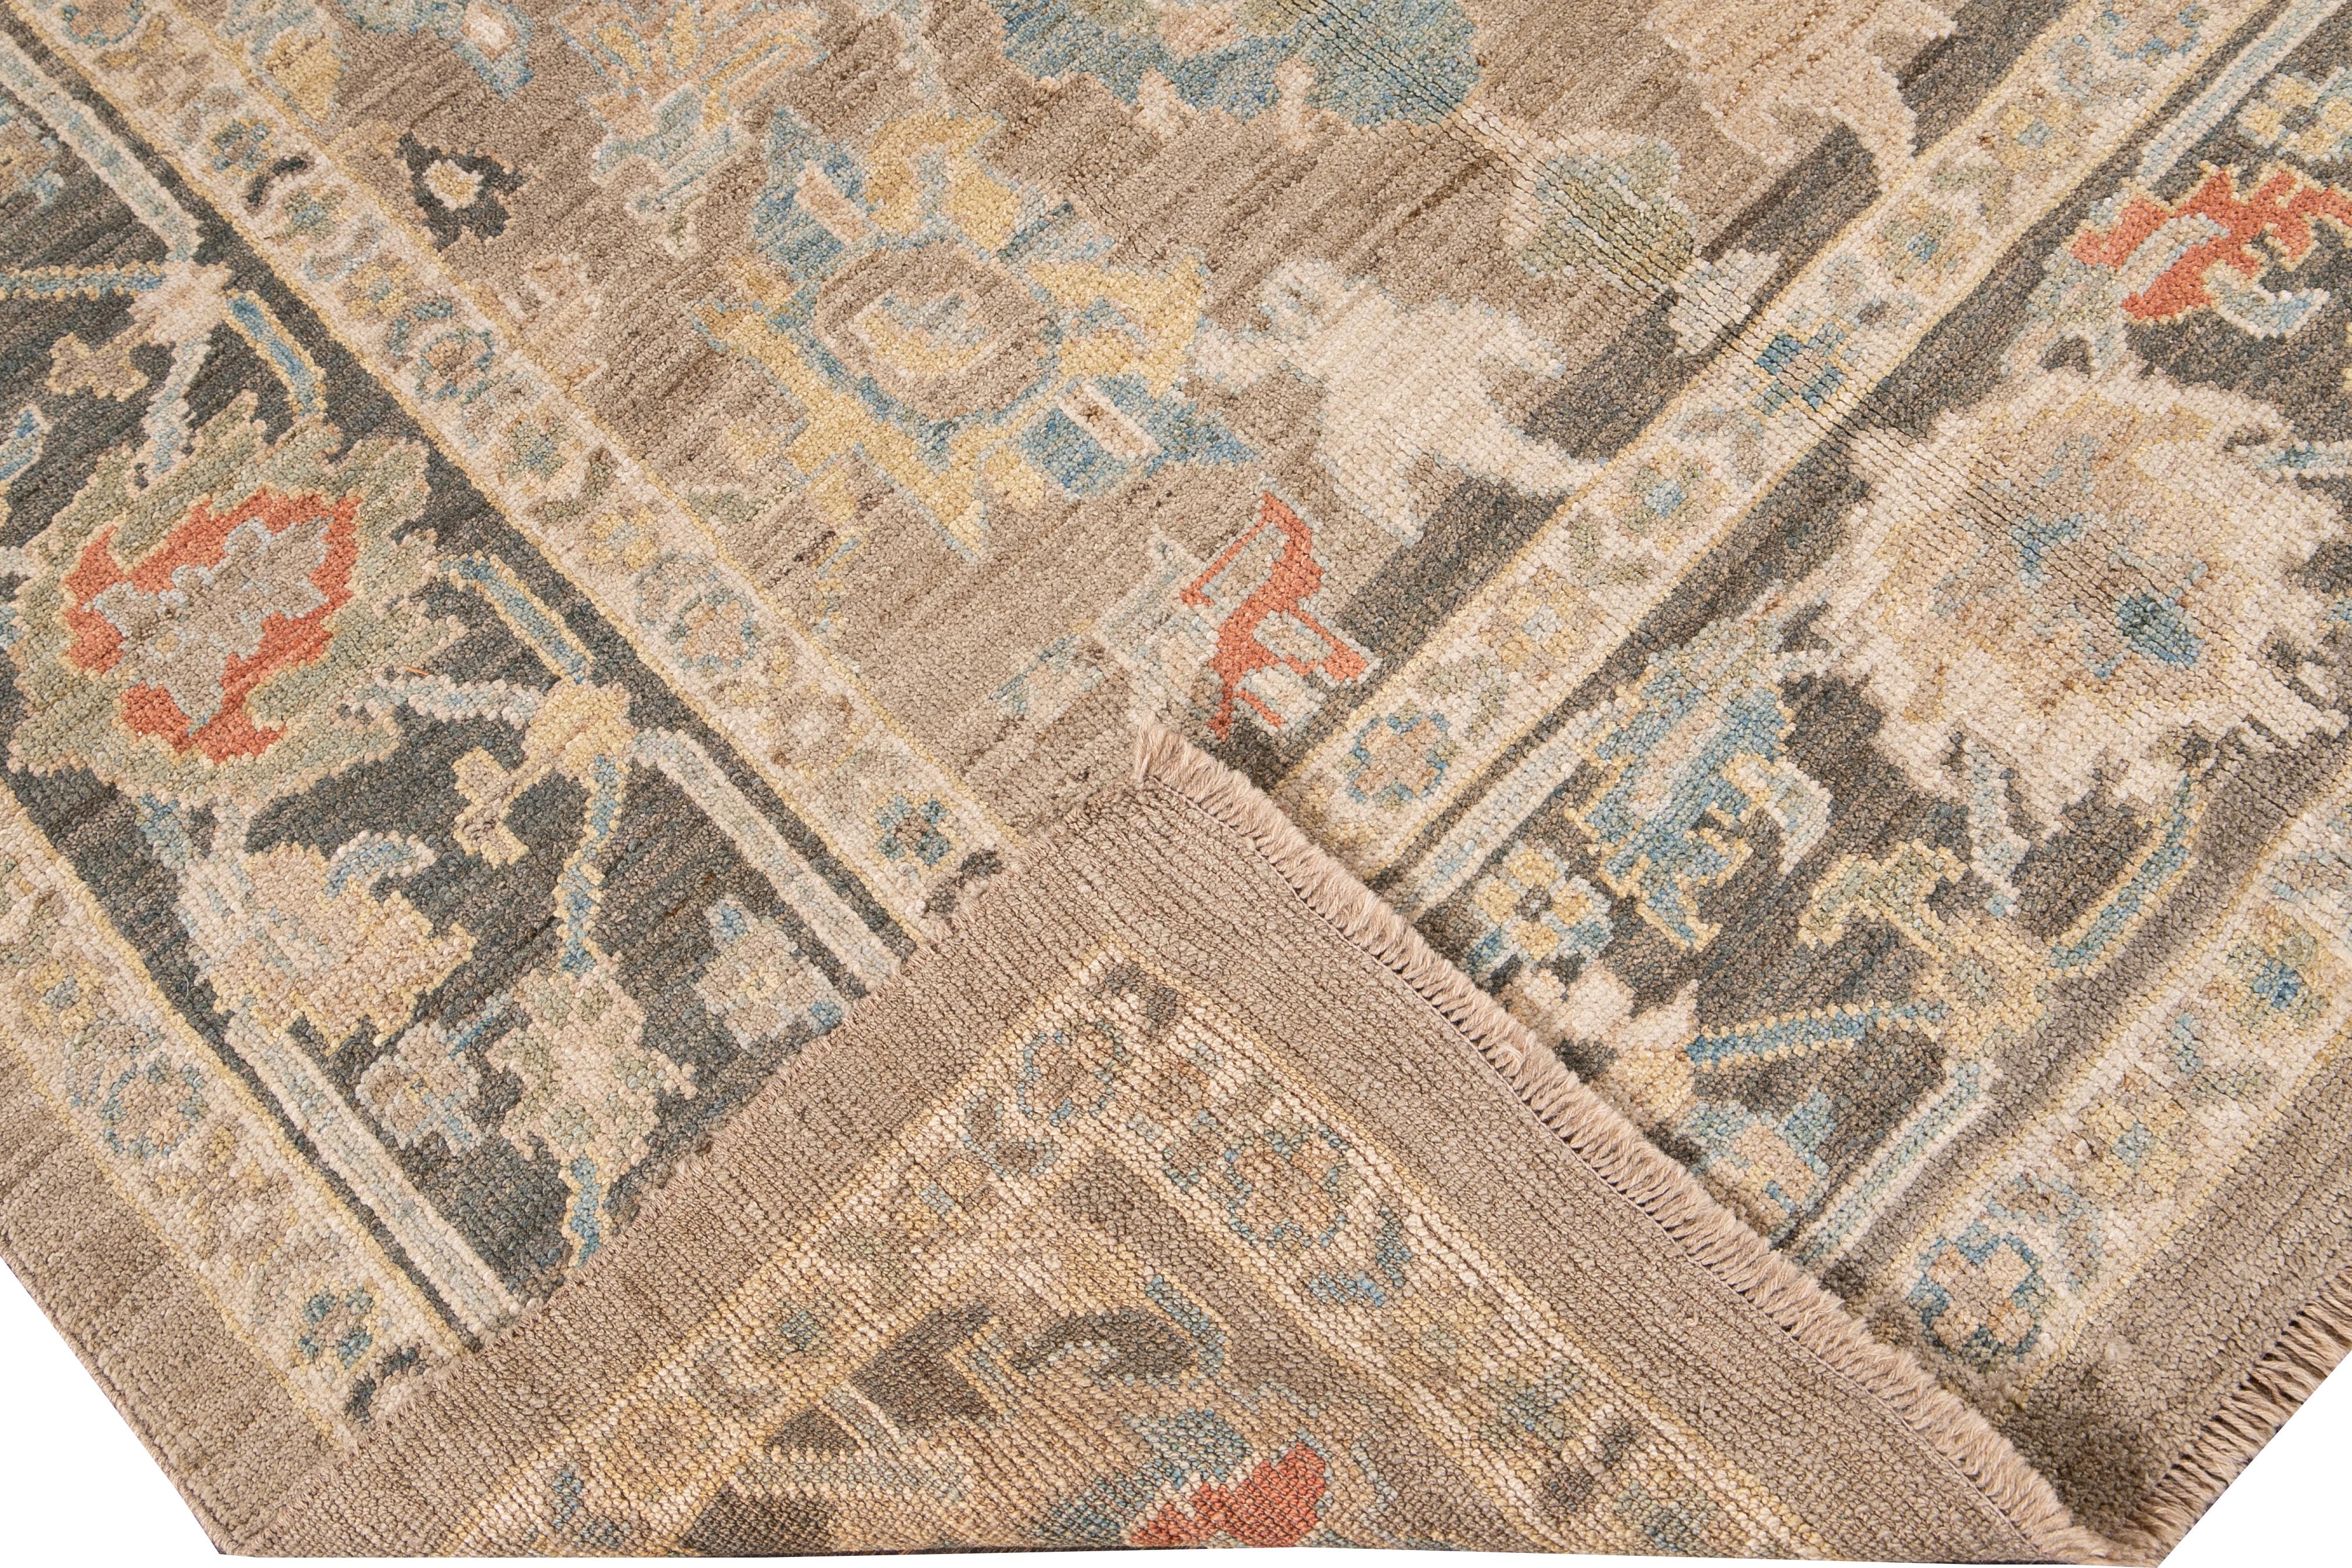 Schöner moderner Sultanabad-Teppich aus handgeknüpfter Wolle mit beigem Feld. Dieser Sultanabad-Teppich hat einen grauen Rahmen und elfenbeinfarbene, gelbe, blaue und orangefarbene Akzente in einem prächtigen geometrischen Blumenmuster.

Dieser